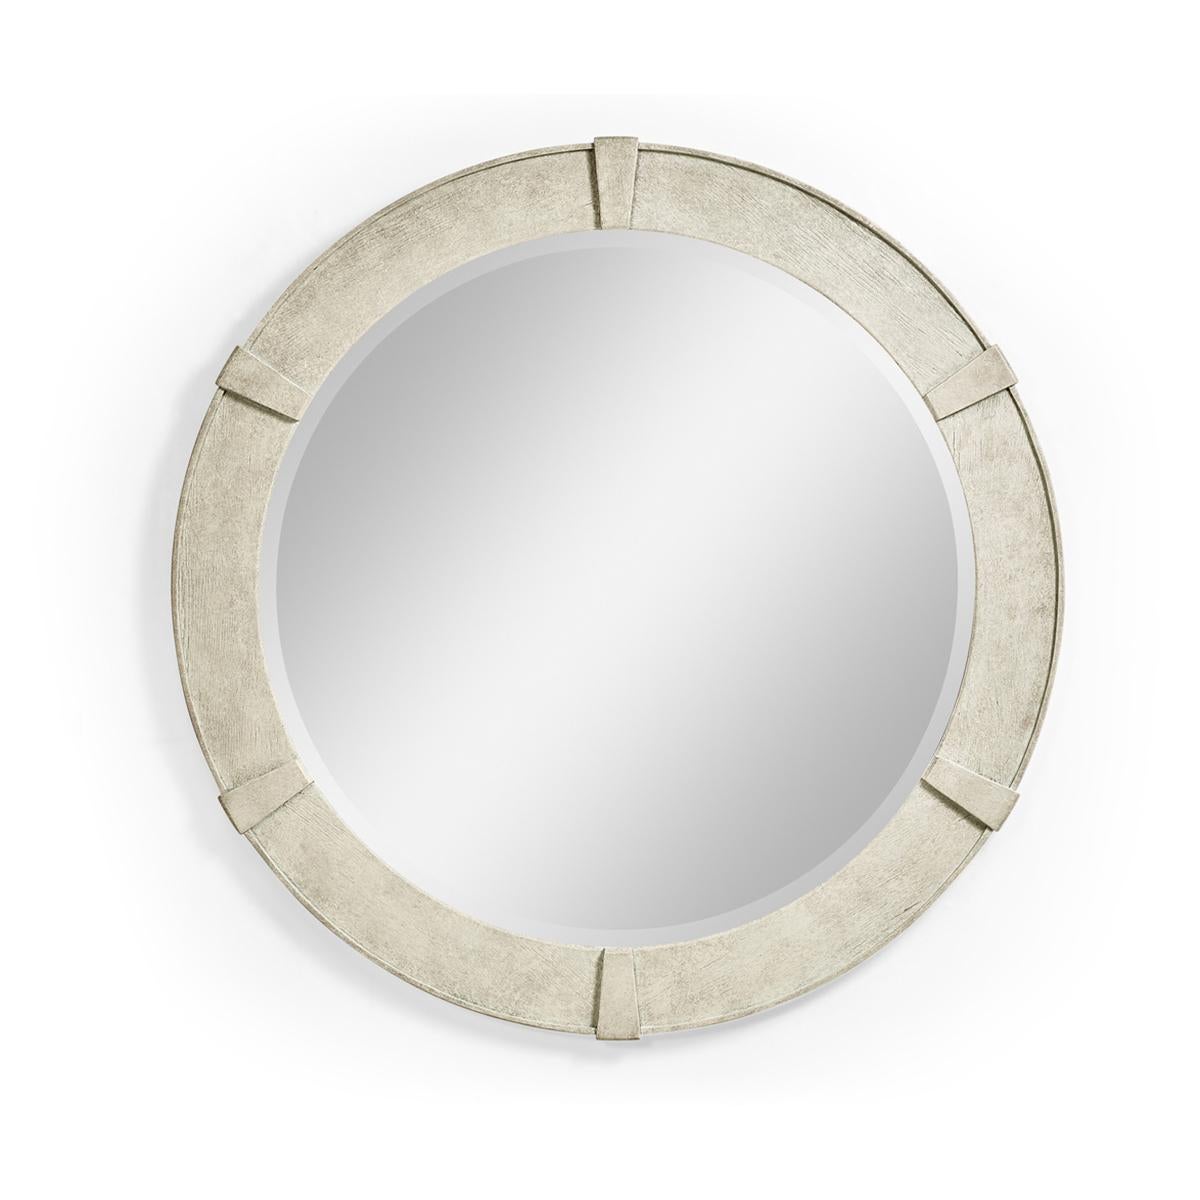 Miroir rond moderne en bois de chêne blanc, le petit miroir circulaire en finition bois de chêne blanc avec un détail sculpté en relief contemporain et un verre de miroir biseauté uni.

Dimensions : 35 7/8